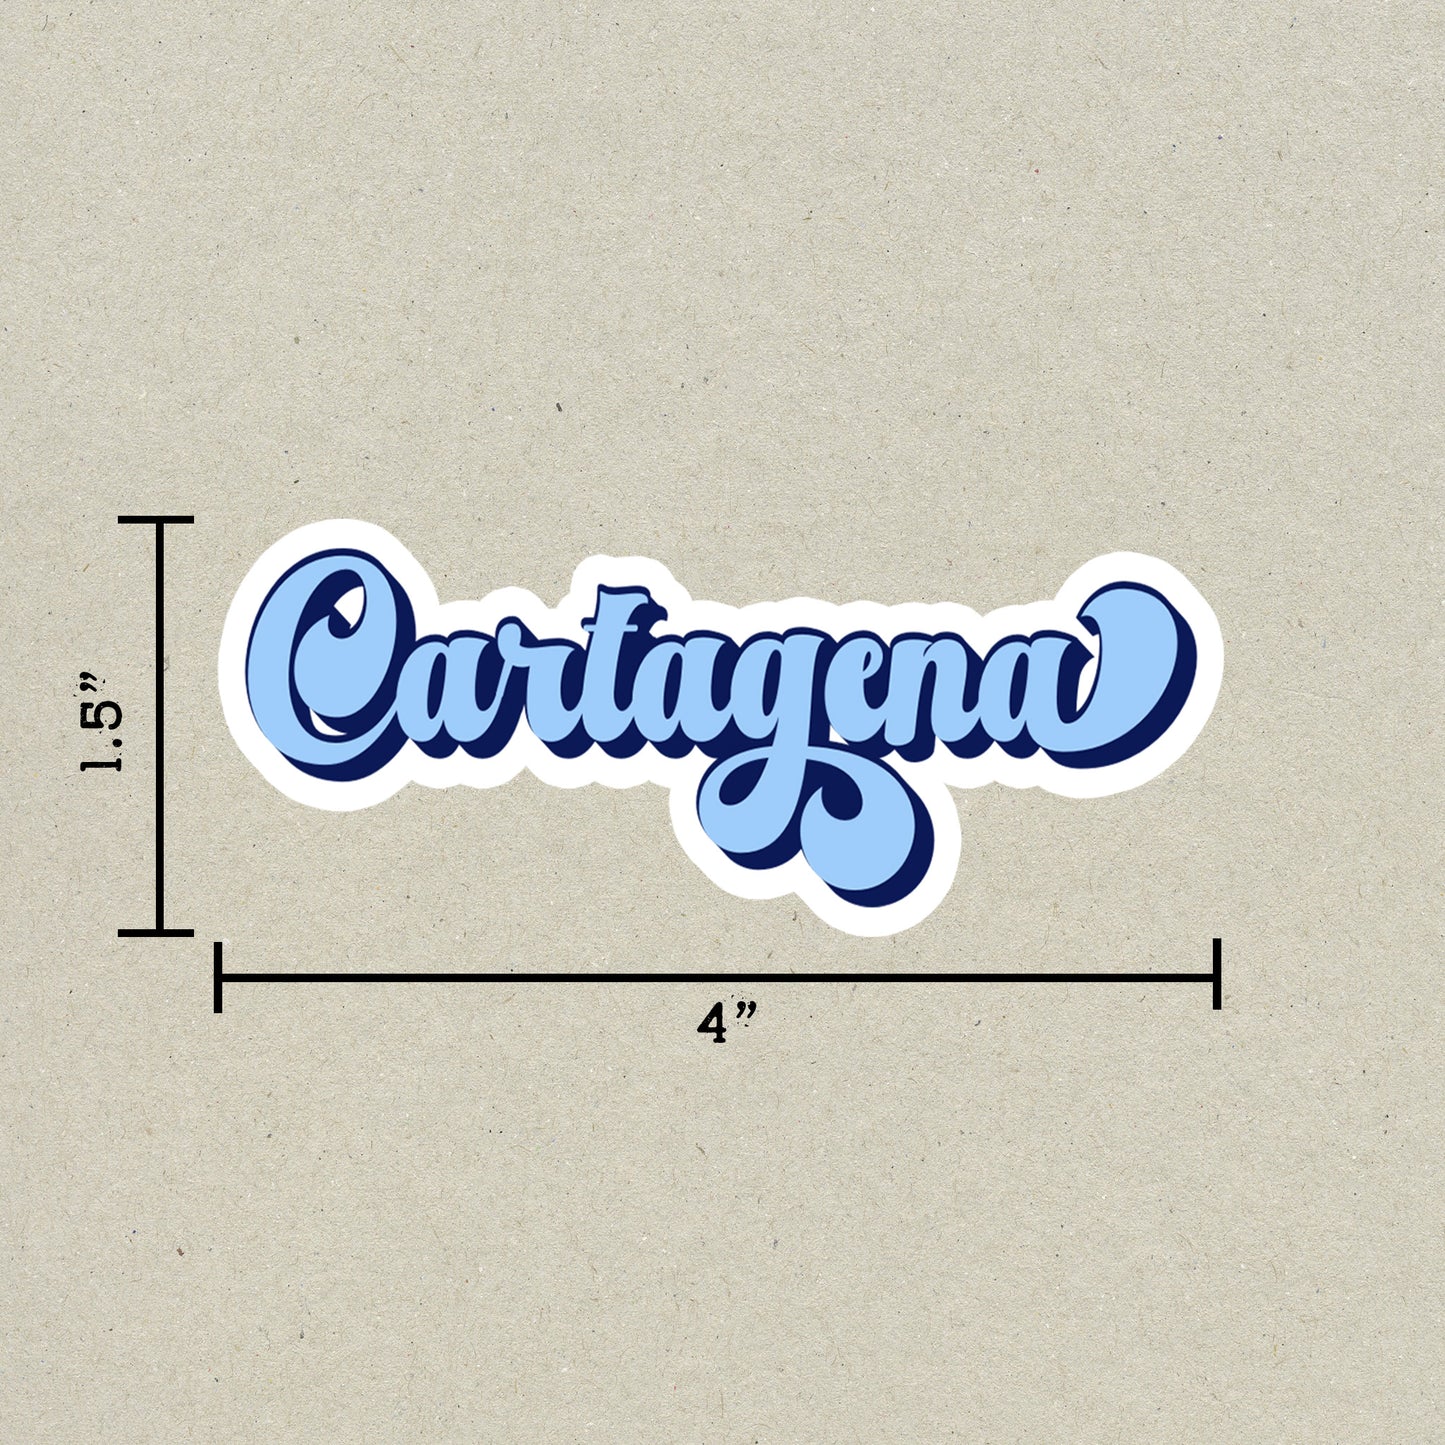 Cartagena Vintage Sticker